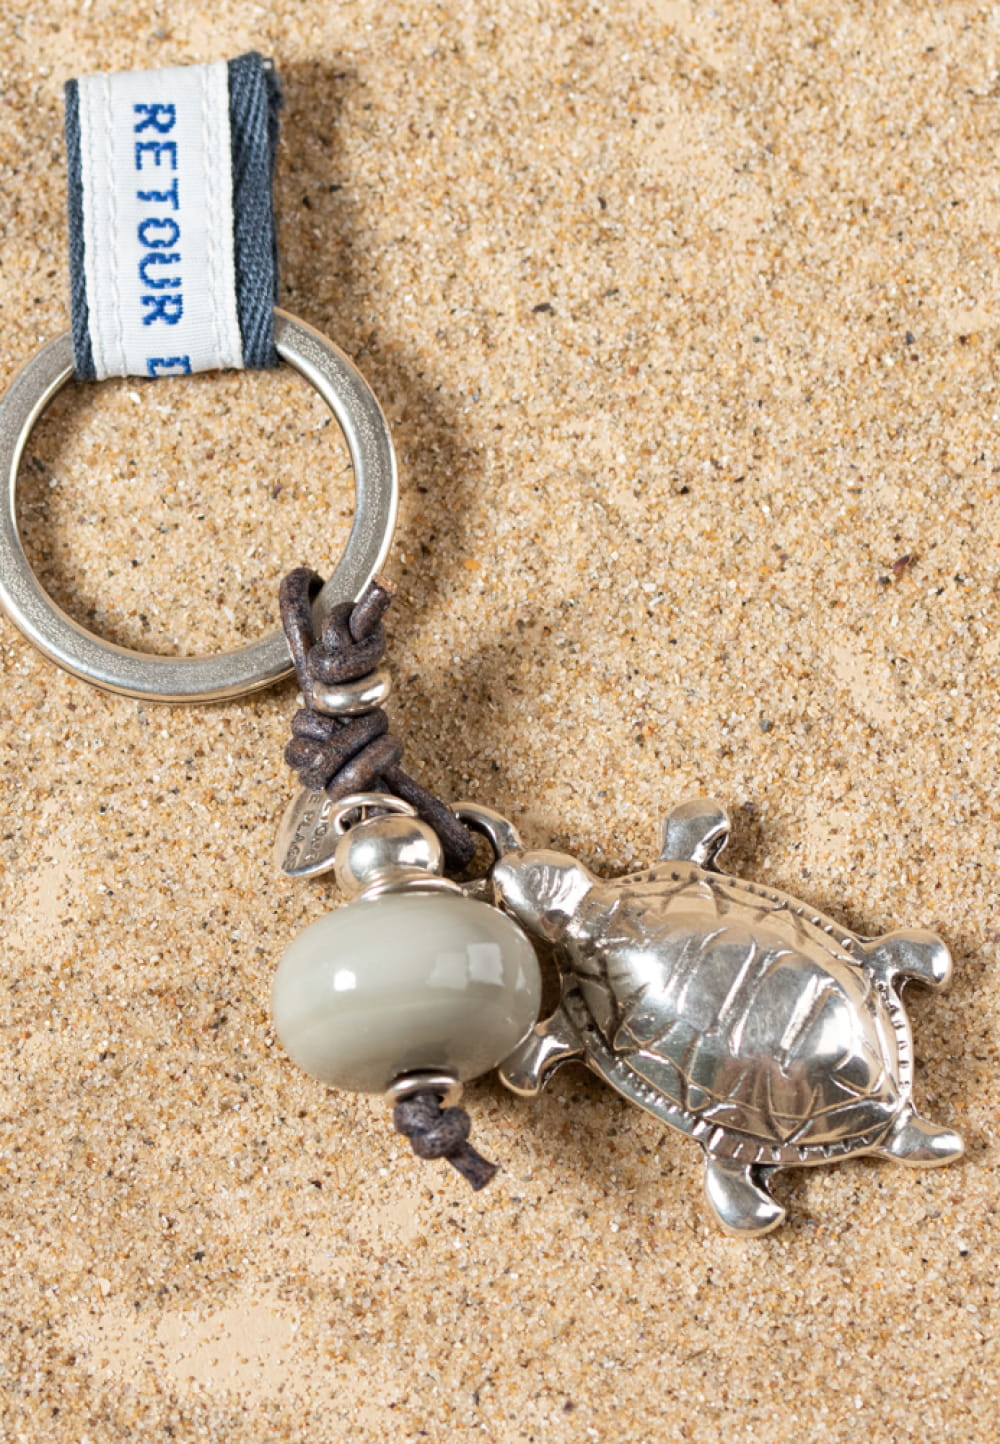 Porte-clefs artisanal en forme de tortue : Tortue - Retour de plage